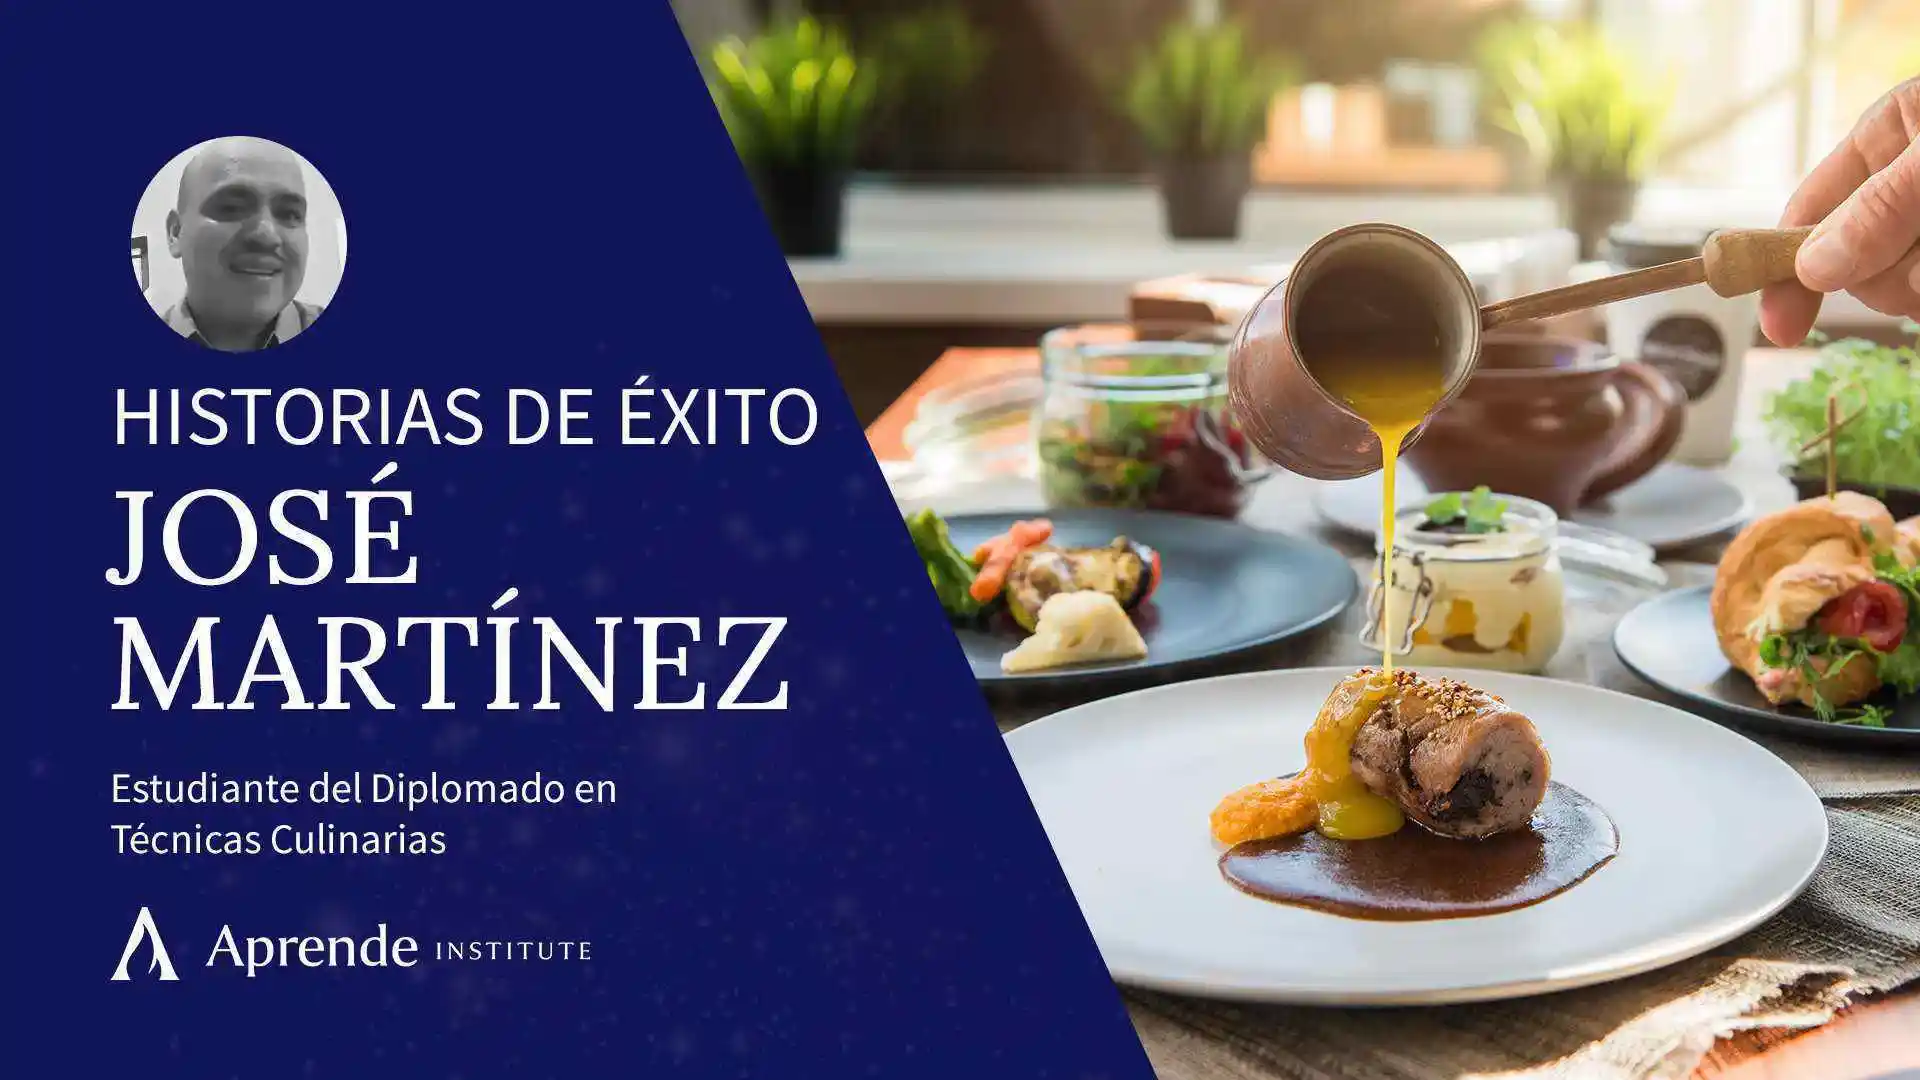 jose martinez estudiante y emprendedor hispano de gastronomia en aprende institute